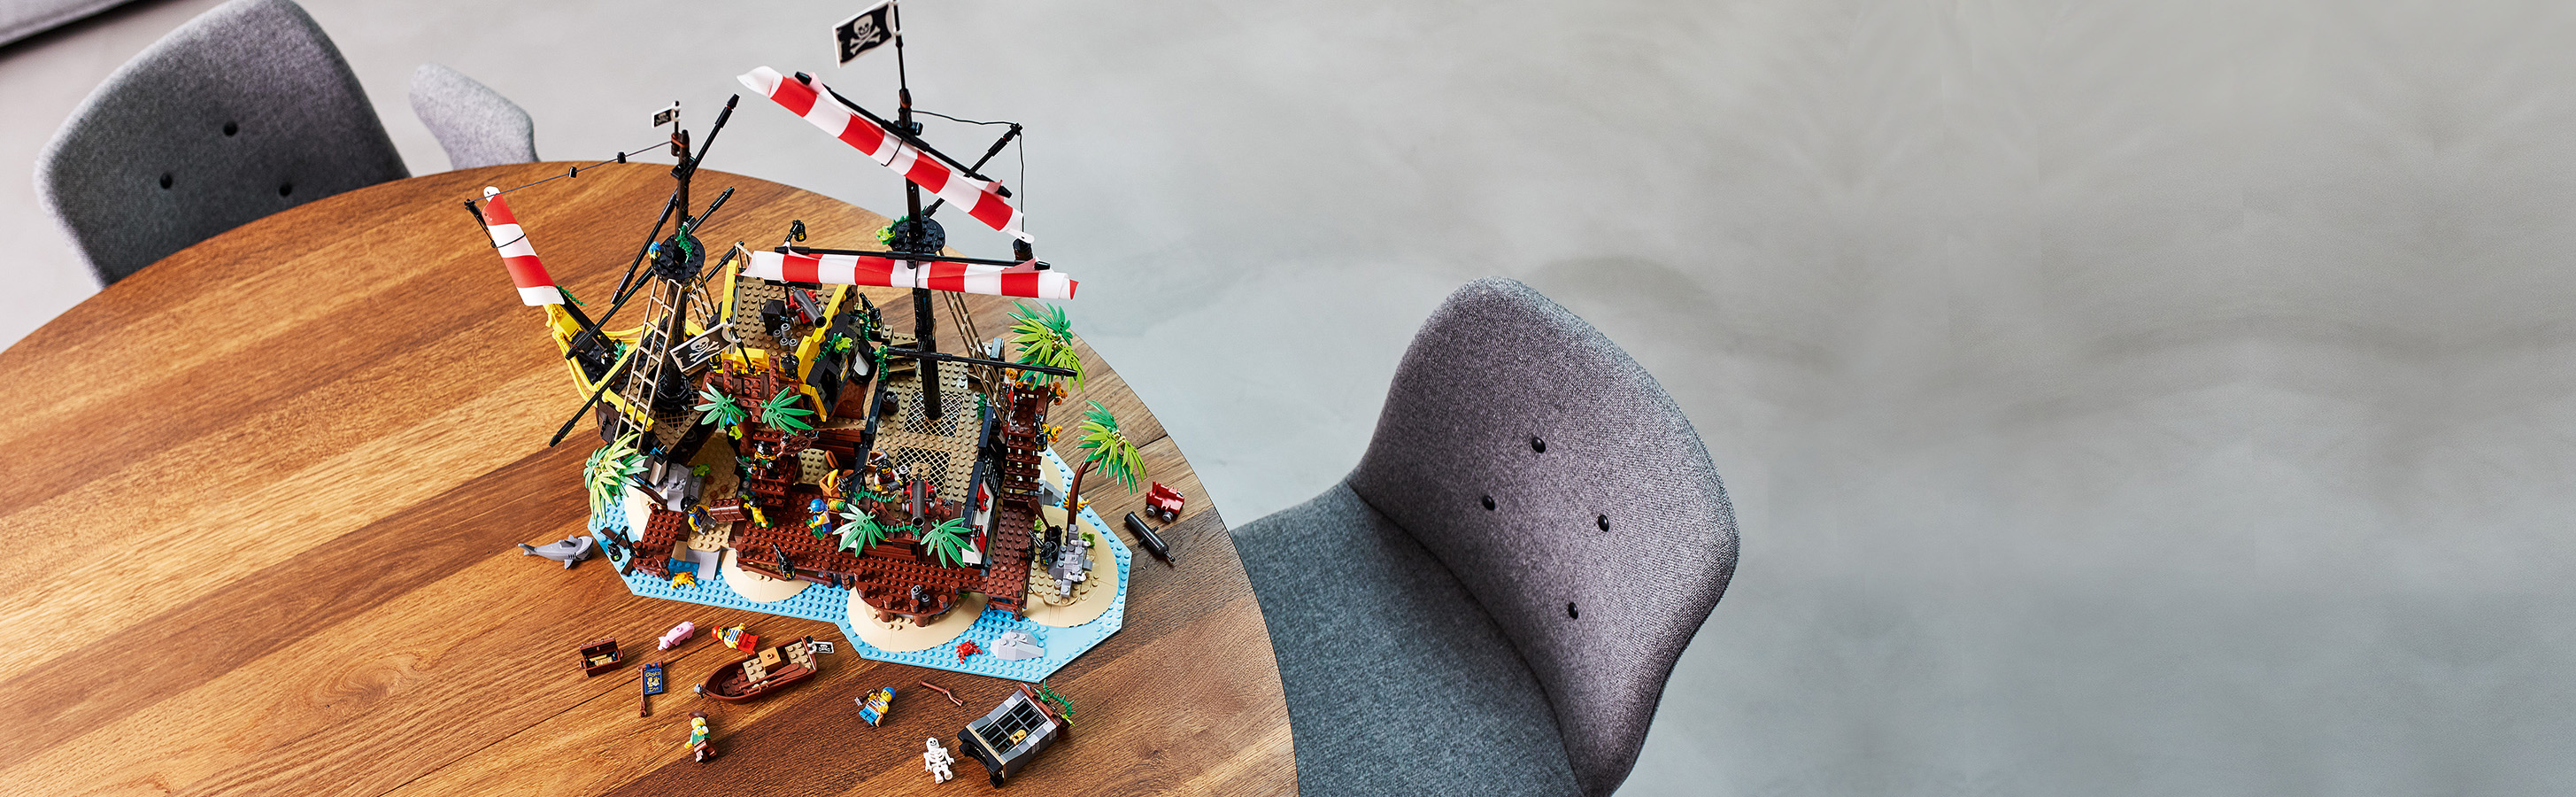 8 úžasných LEGO® minifigurek pirátů